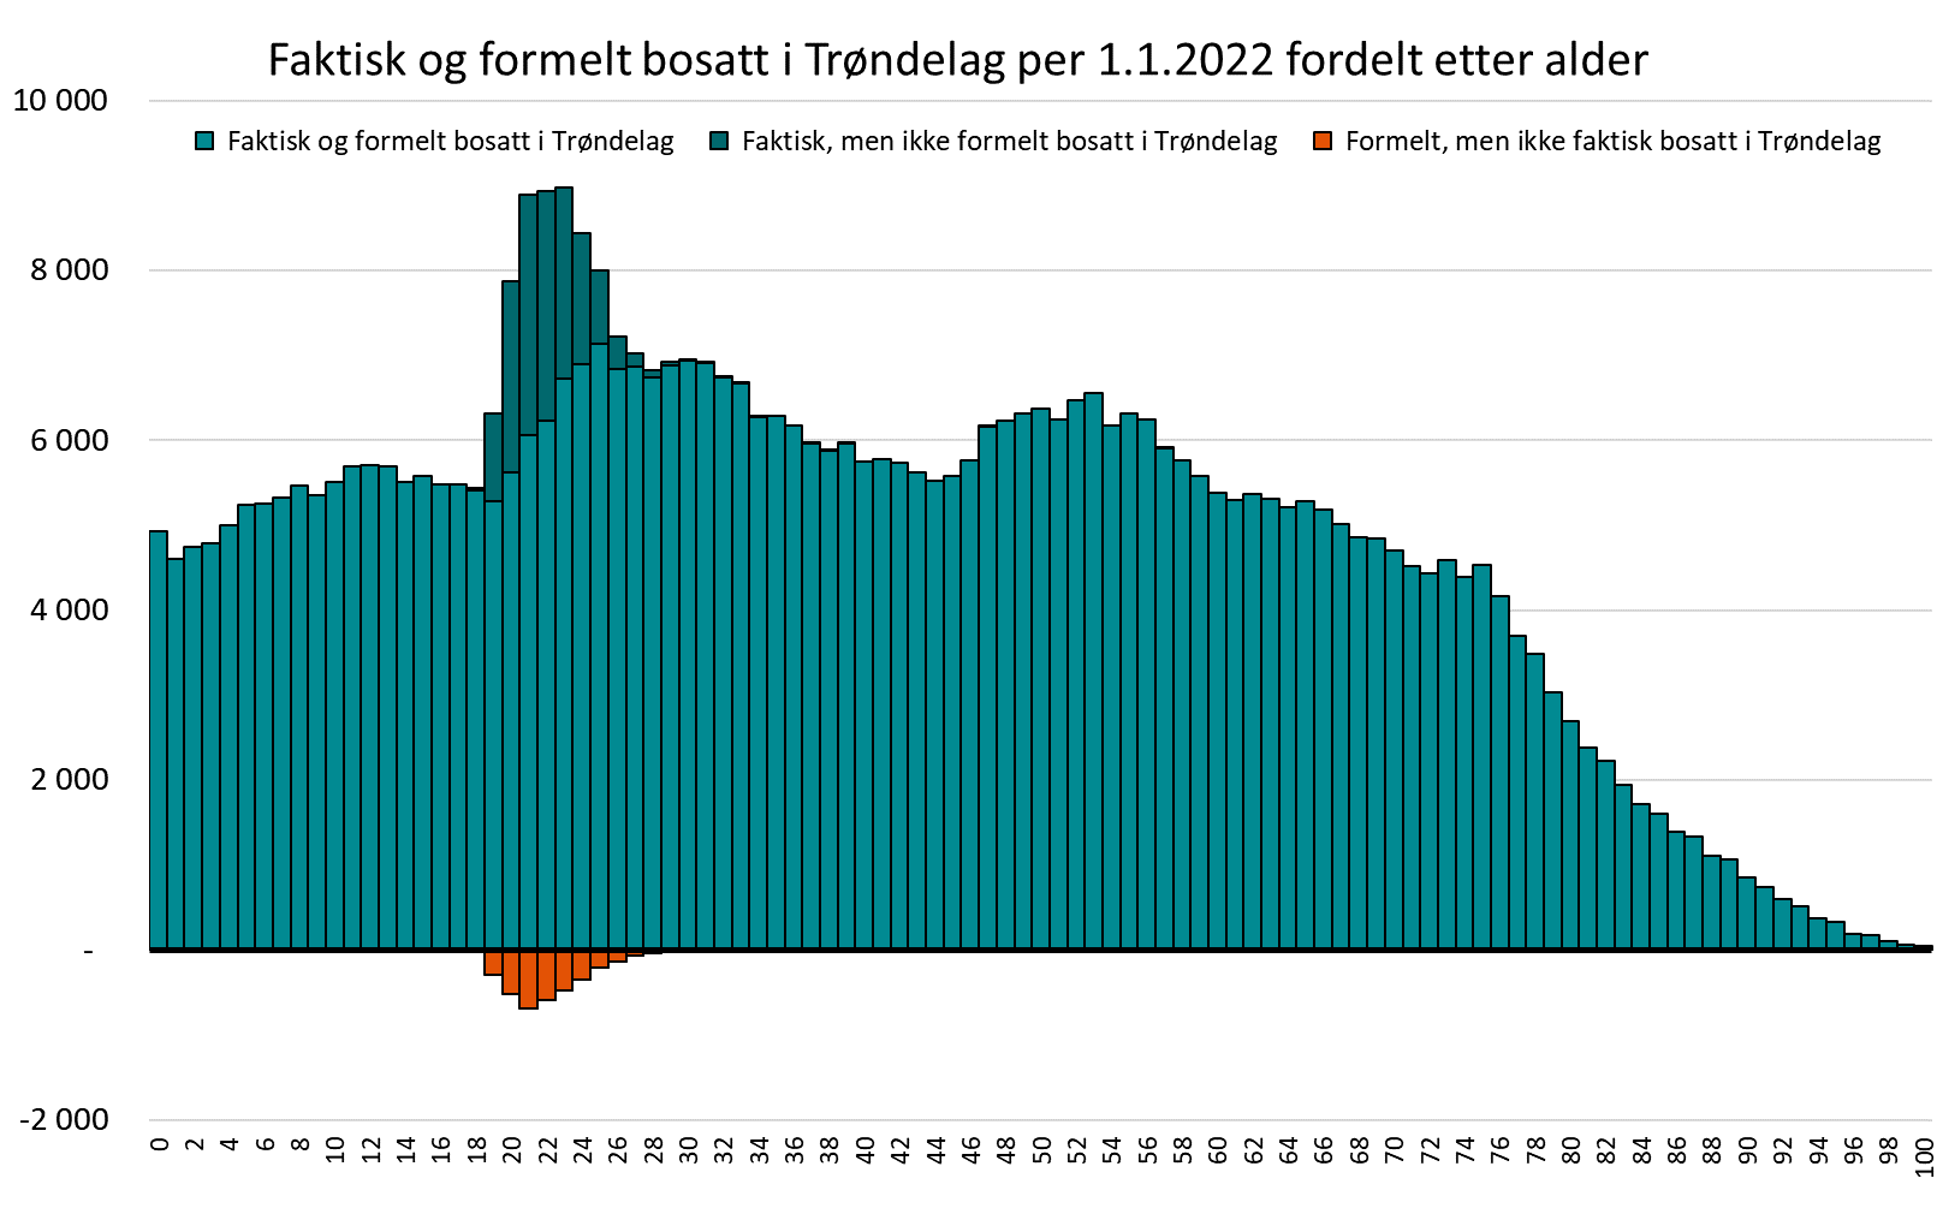 Faktisk og formelt bosatt i Trøndelag per 1.1.2022 fordelt etter alder